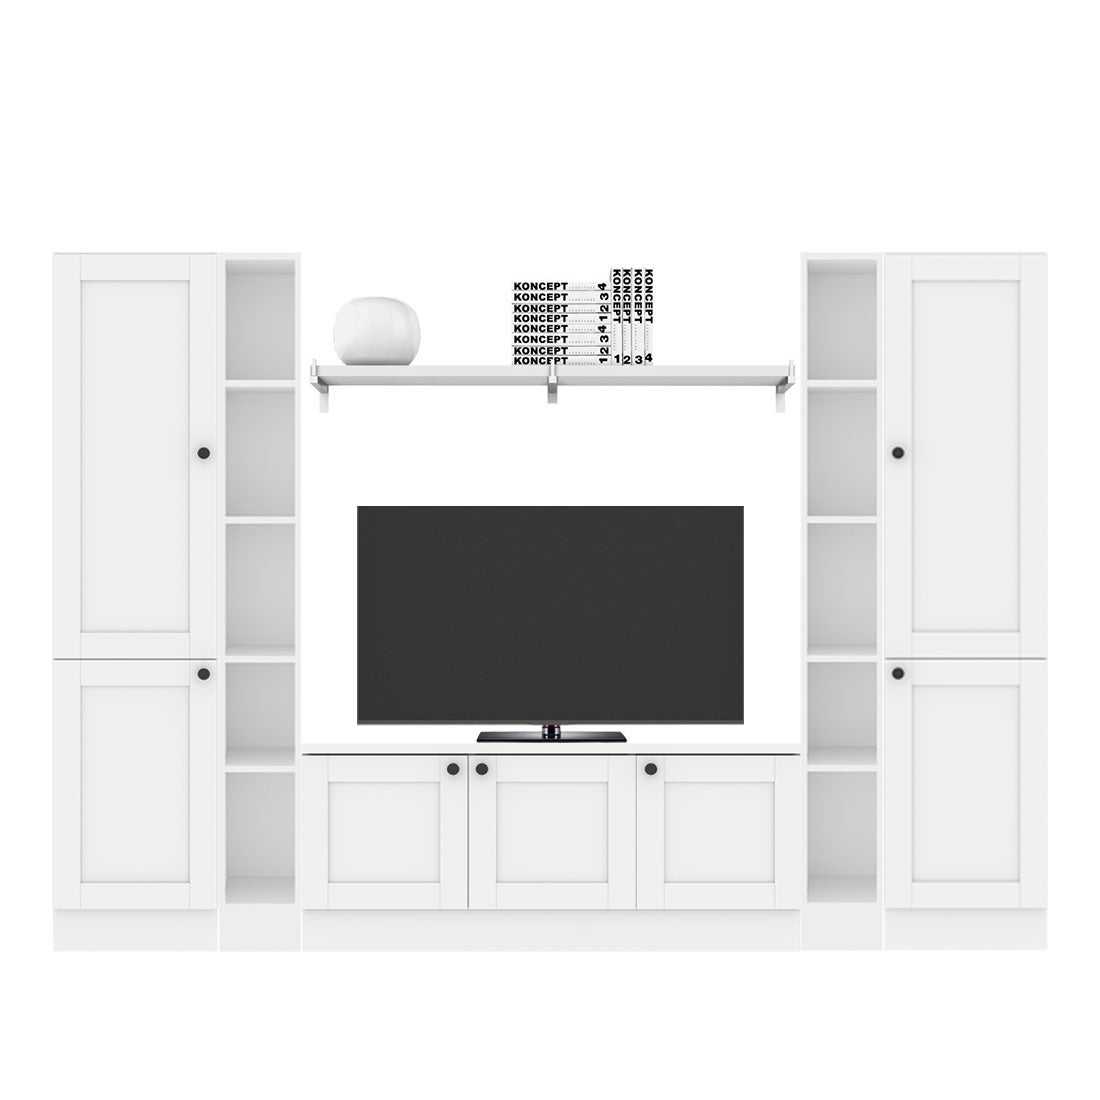 ชุดวางทีวีและตู้โชว์ ขนาด 240 ซม. รุ่น Contini Plus สีขาว01